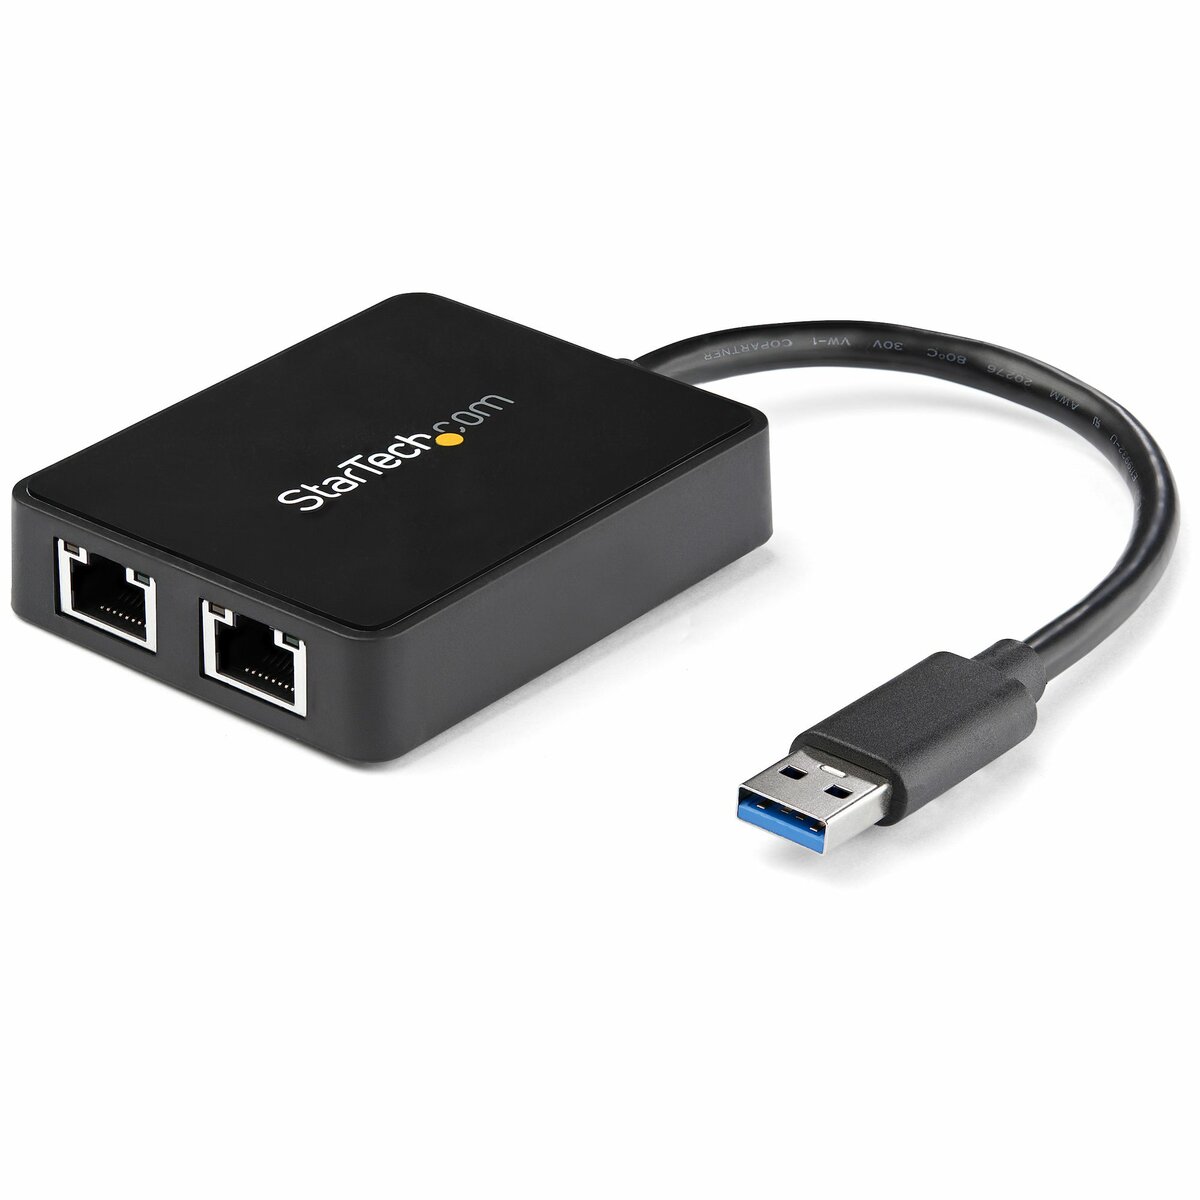 Product  StarTech.com Adattatore USB 3.0 a doppia porta RJ45 con porta USB  integrata - Scheda di rete esterna NIC LAN USB a Gigabit (USB32000SPT) -  Adattatore di rete - USB 3.0 - 2 porte